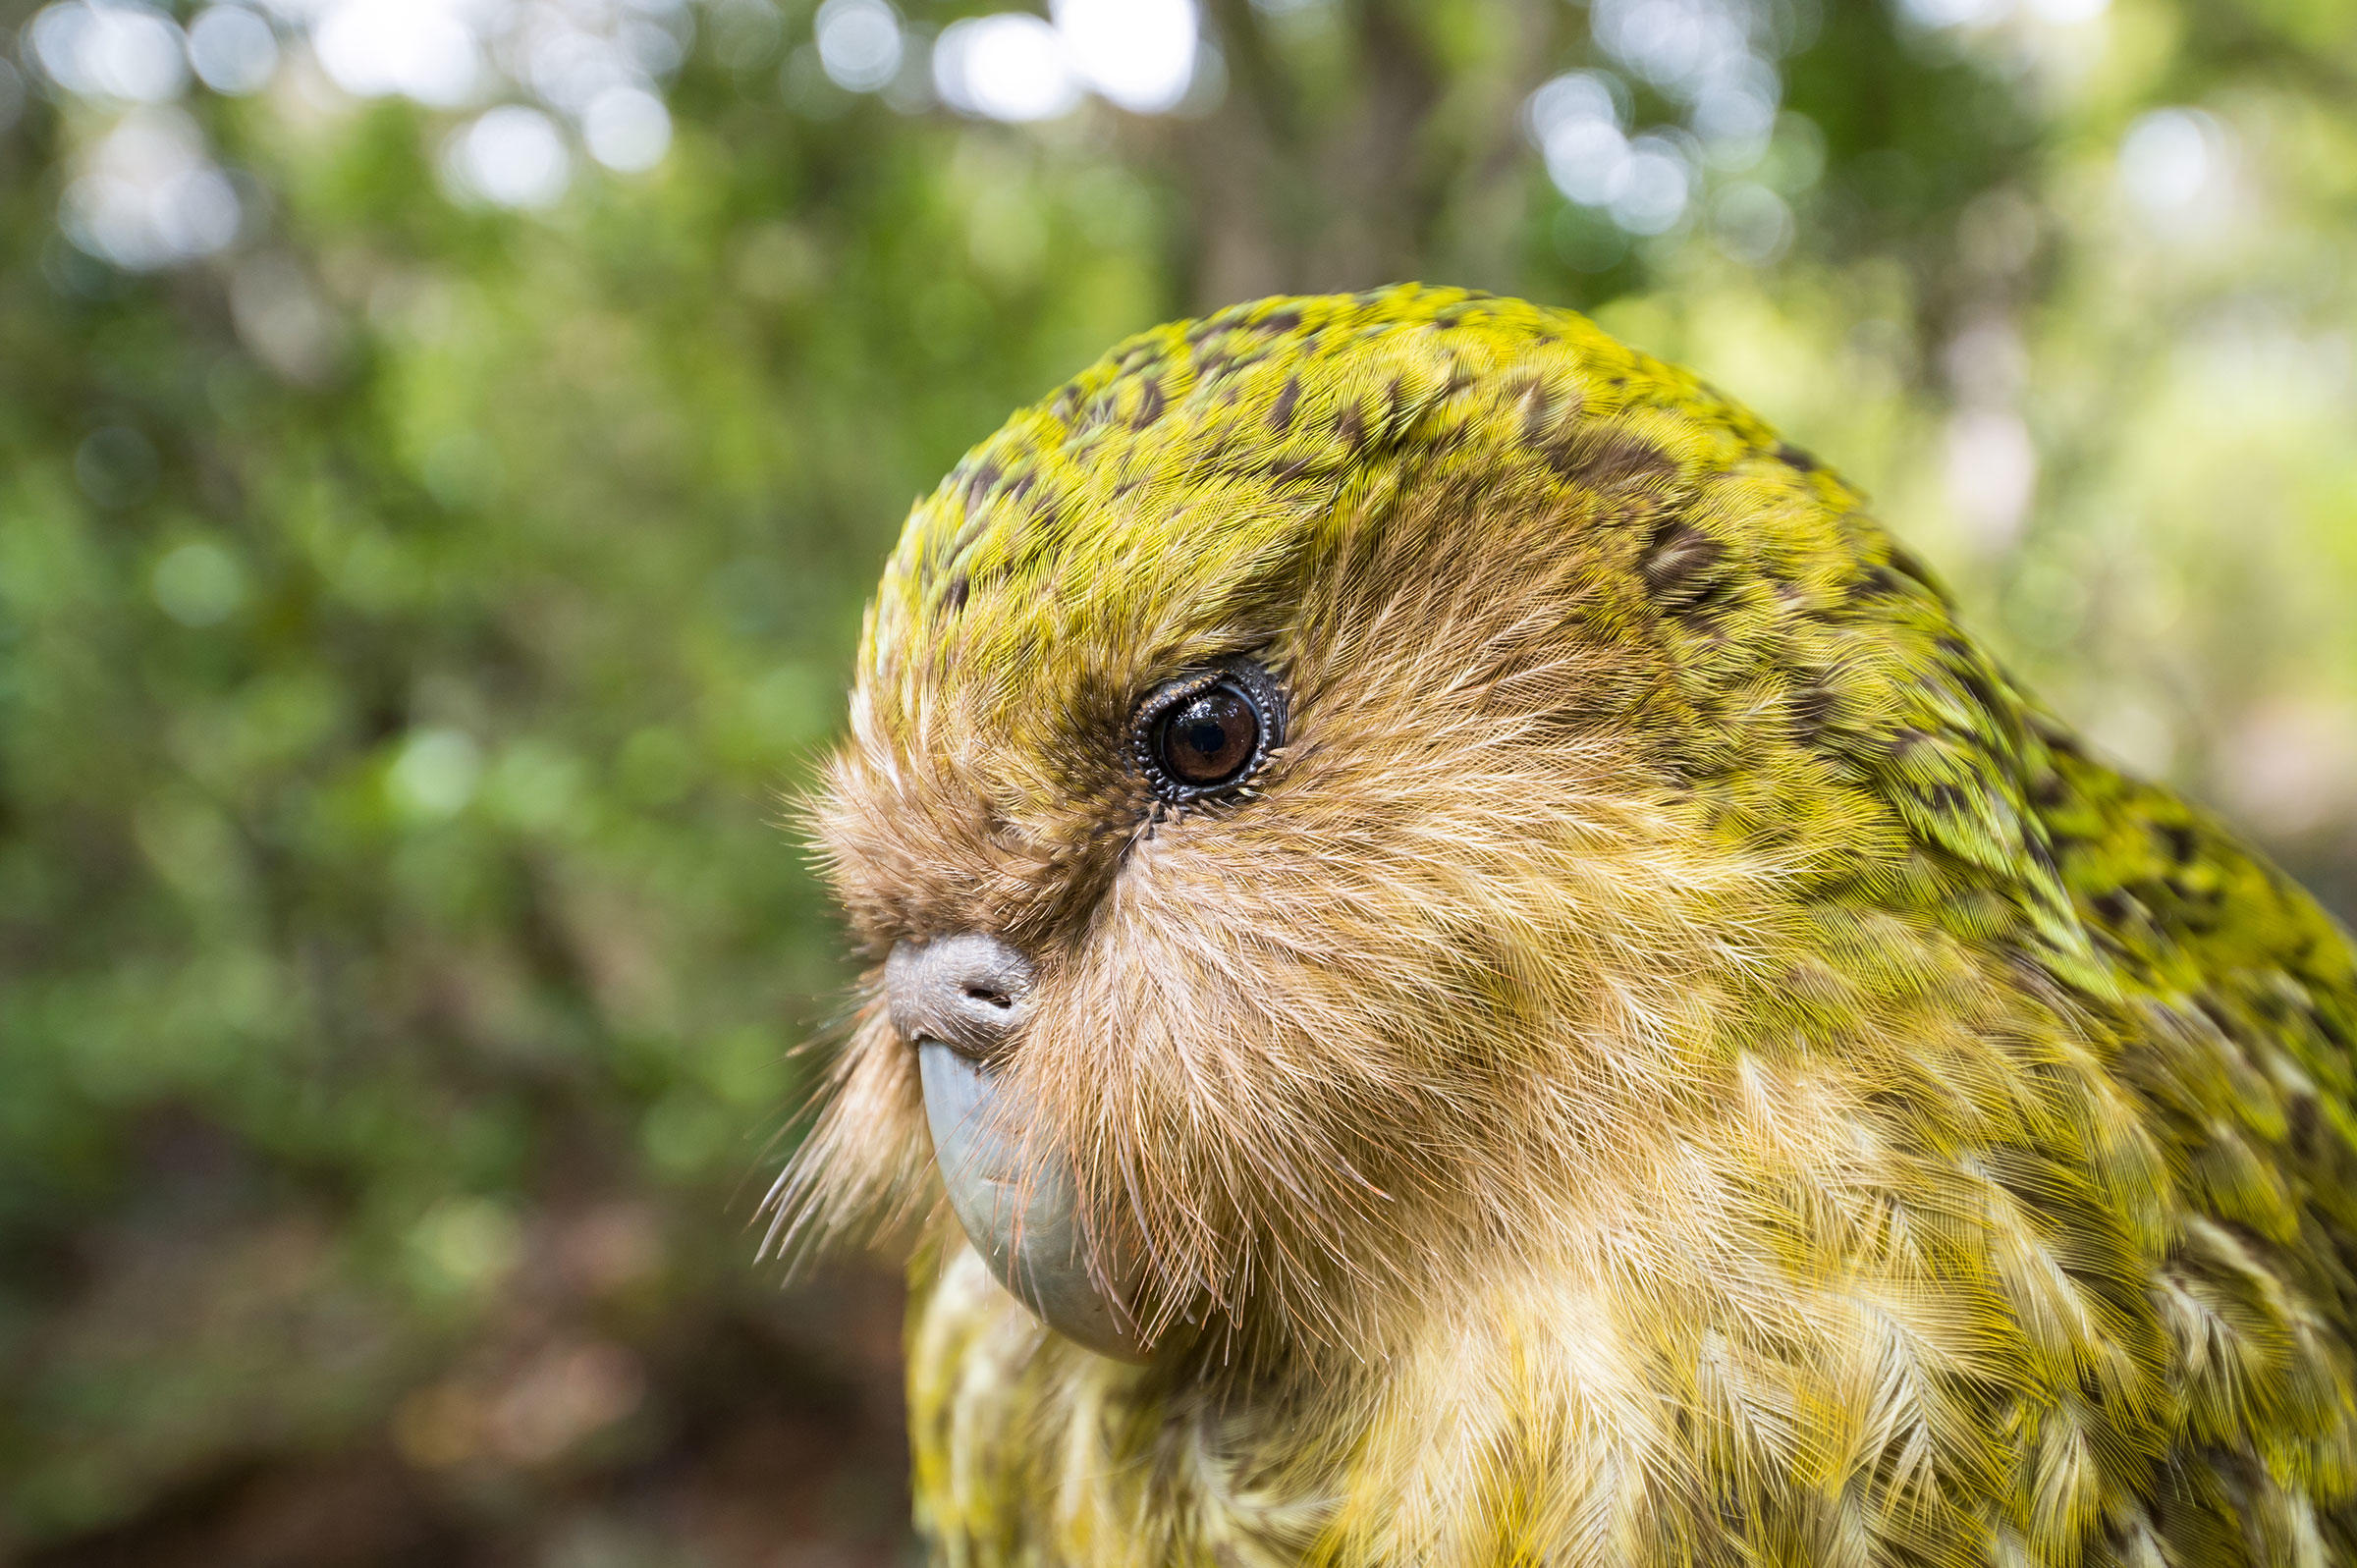 سنگین ترین طوطی جهان که پرنده سال ۲۰۲۰ نیوزیلند شد+ عکس